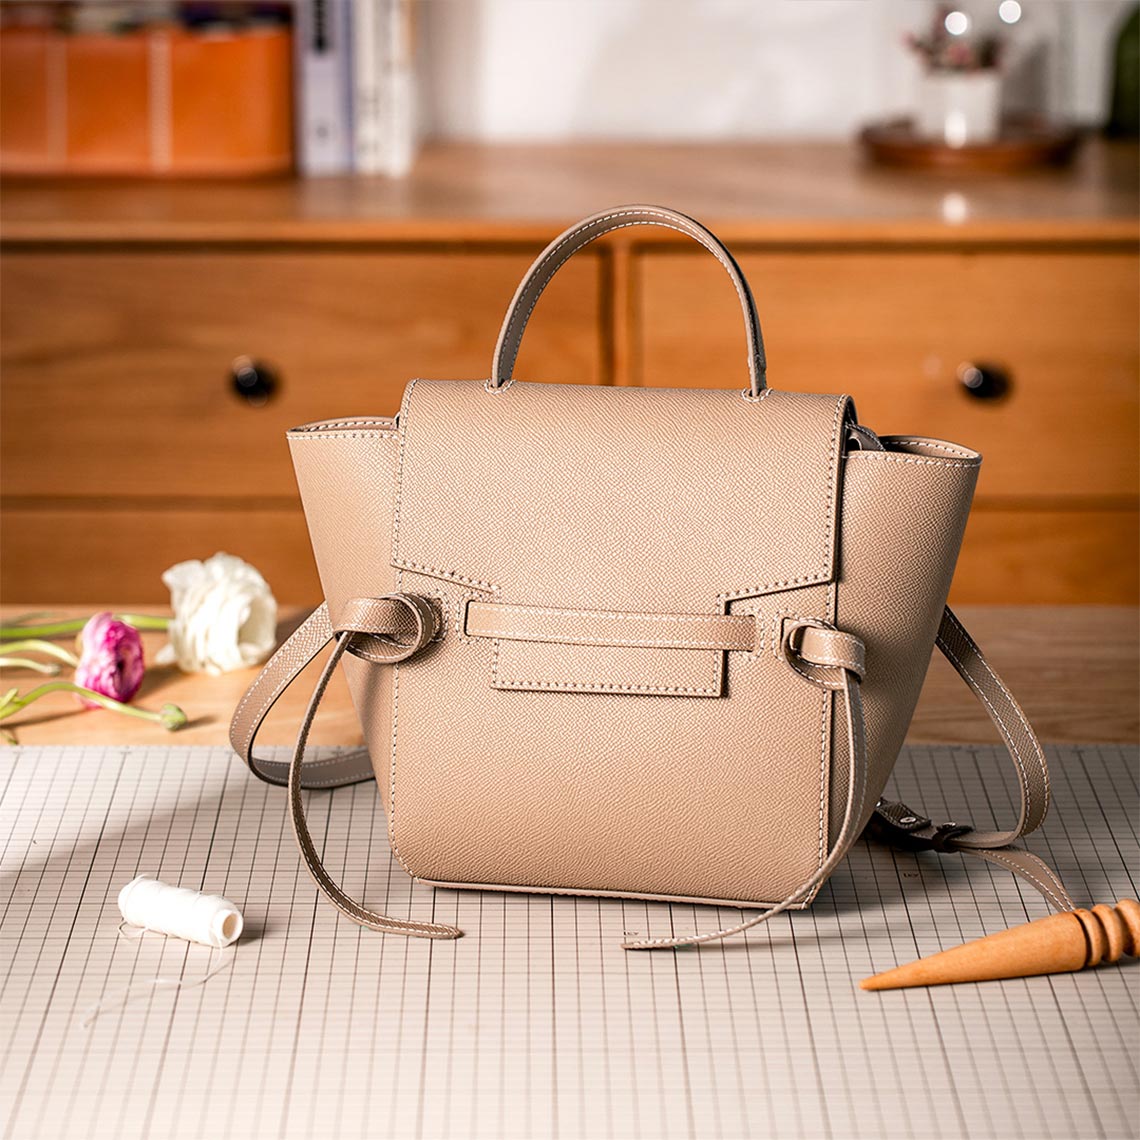 Celine Belt Style Bag -  Catfish Bag - Designer Inspired Belt Bag  |  POPSEWING™